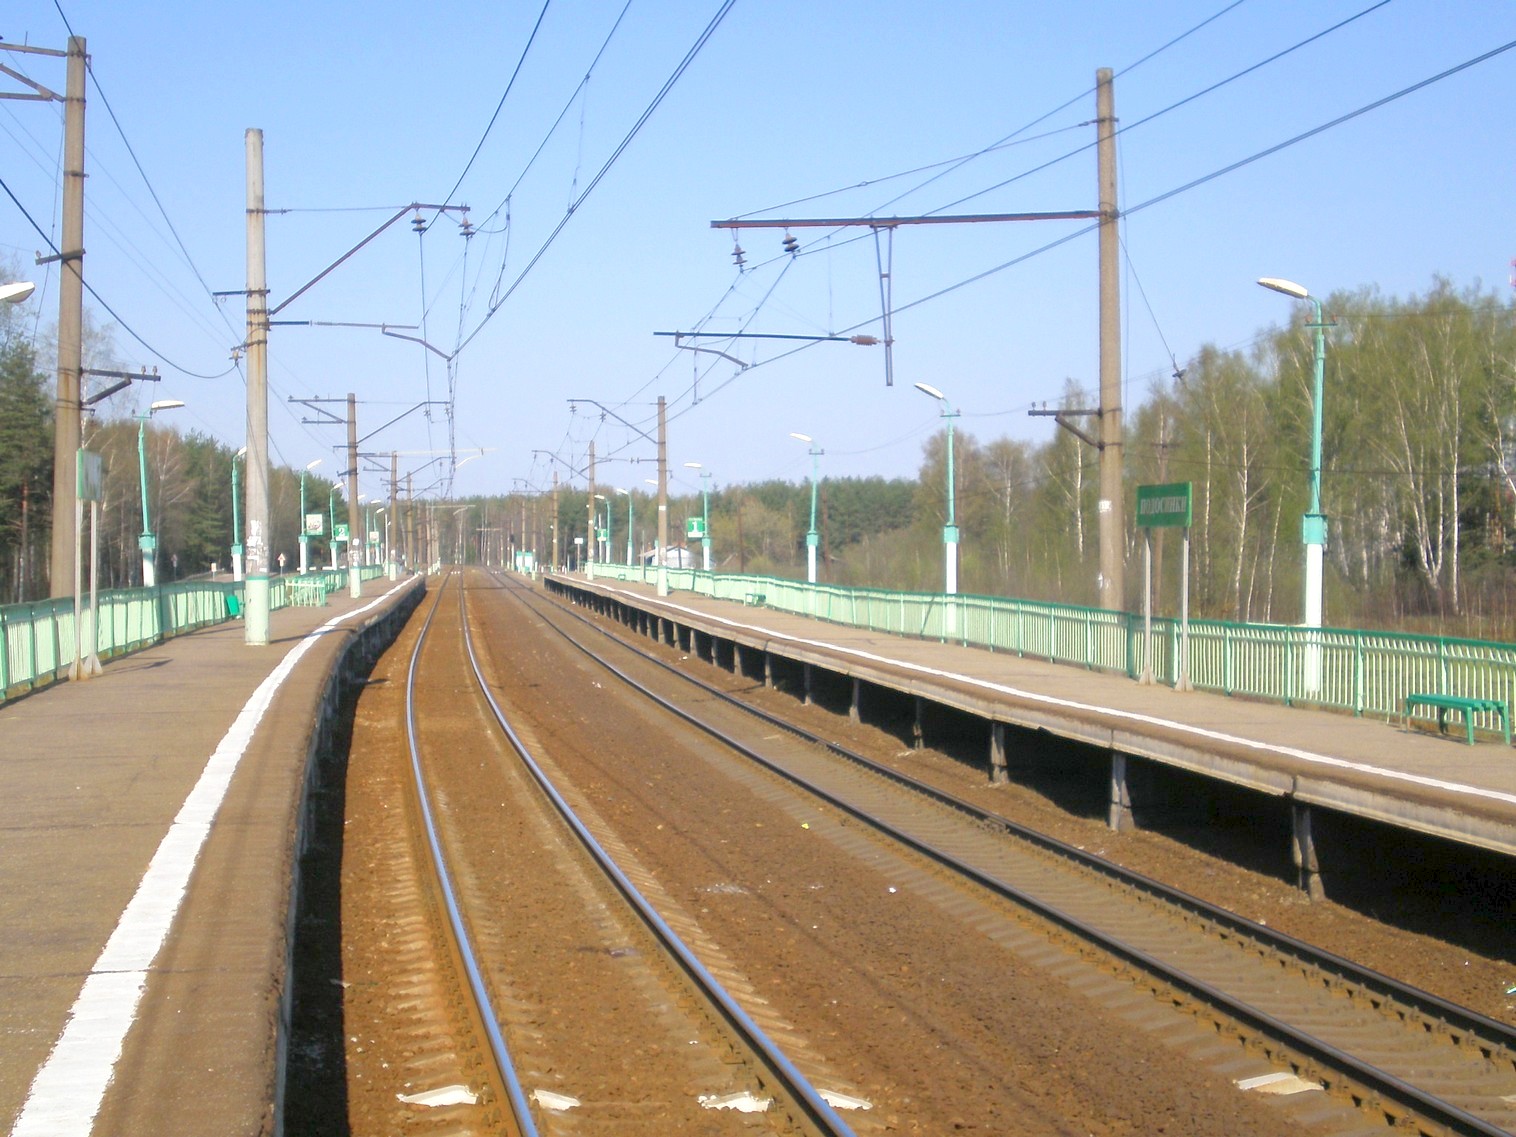 Люберцы-Арзамасская   железнодорожная линия на территории Московской области  — остановочный пункт Подосинки